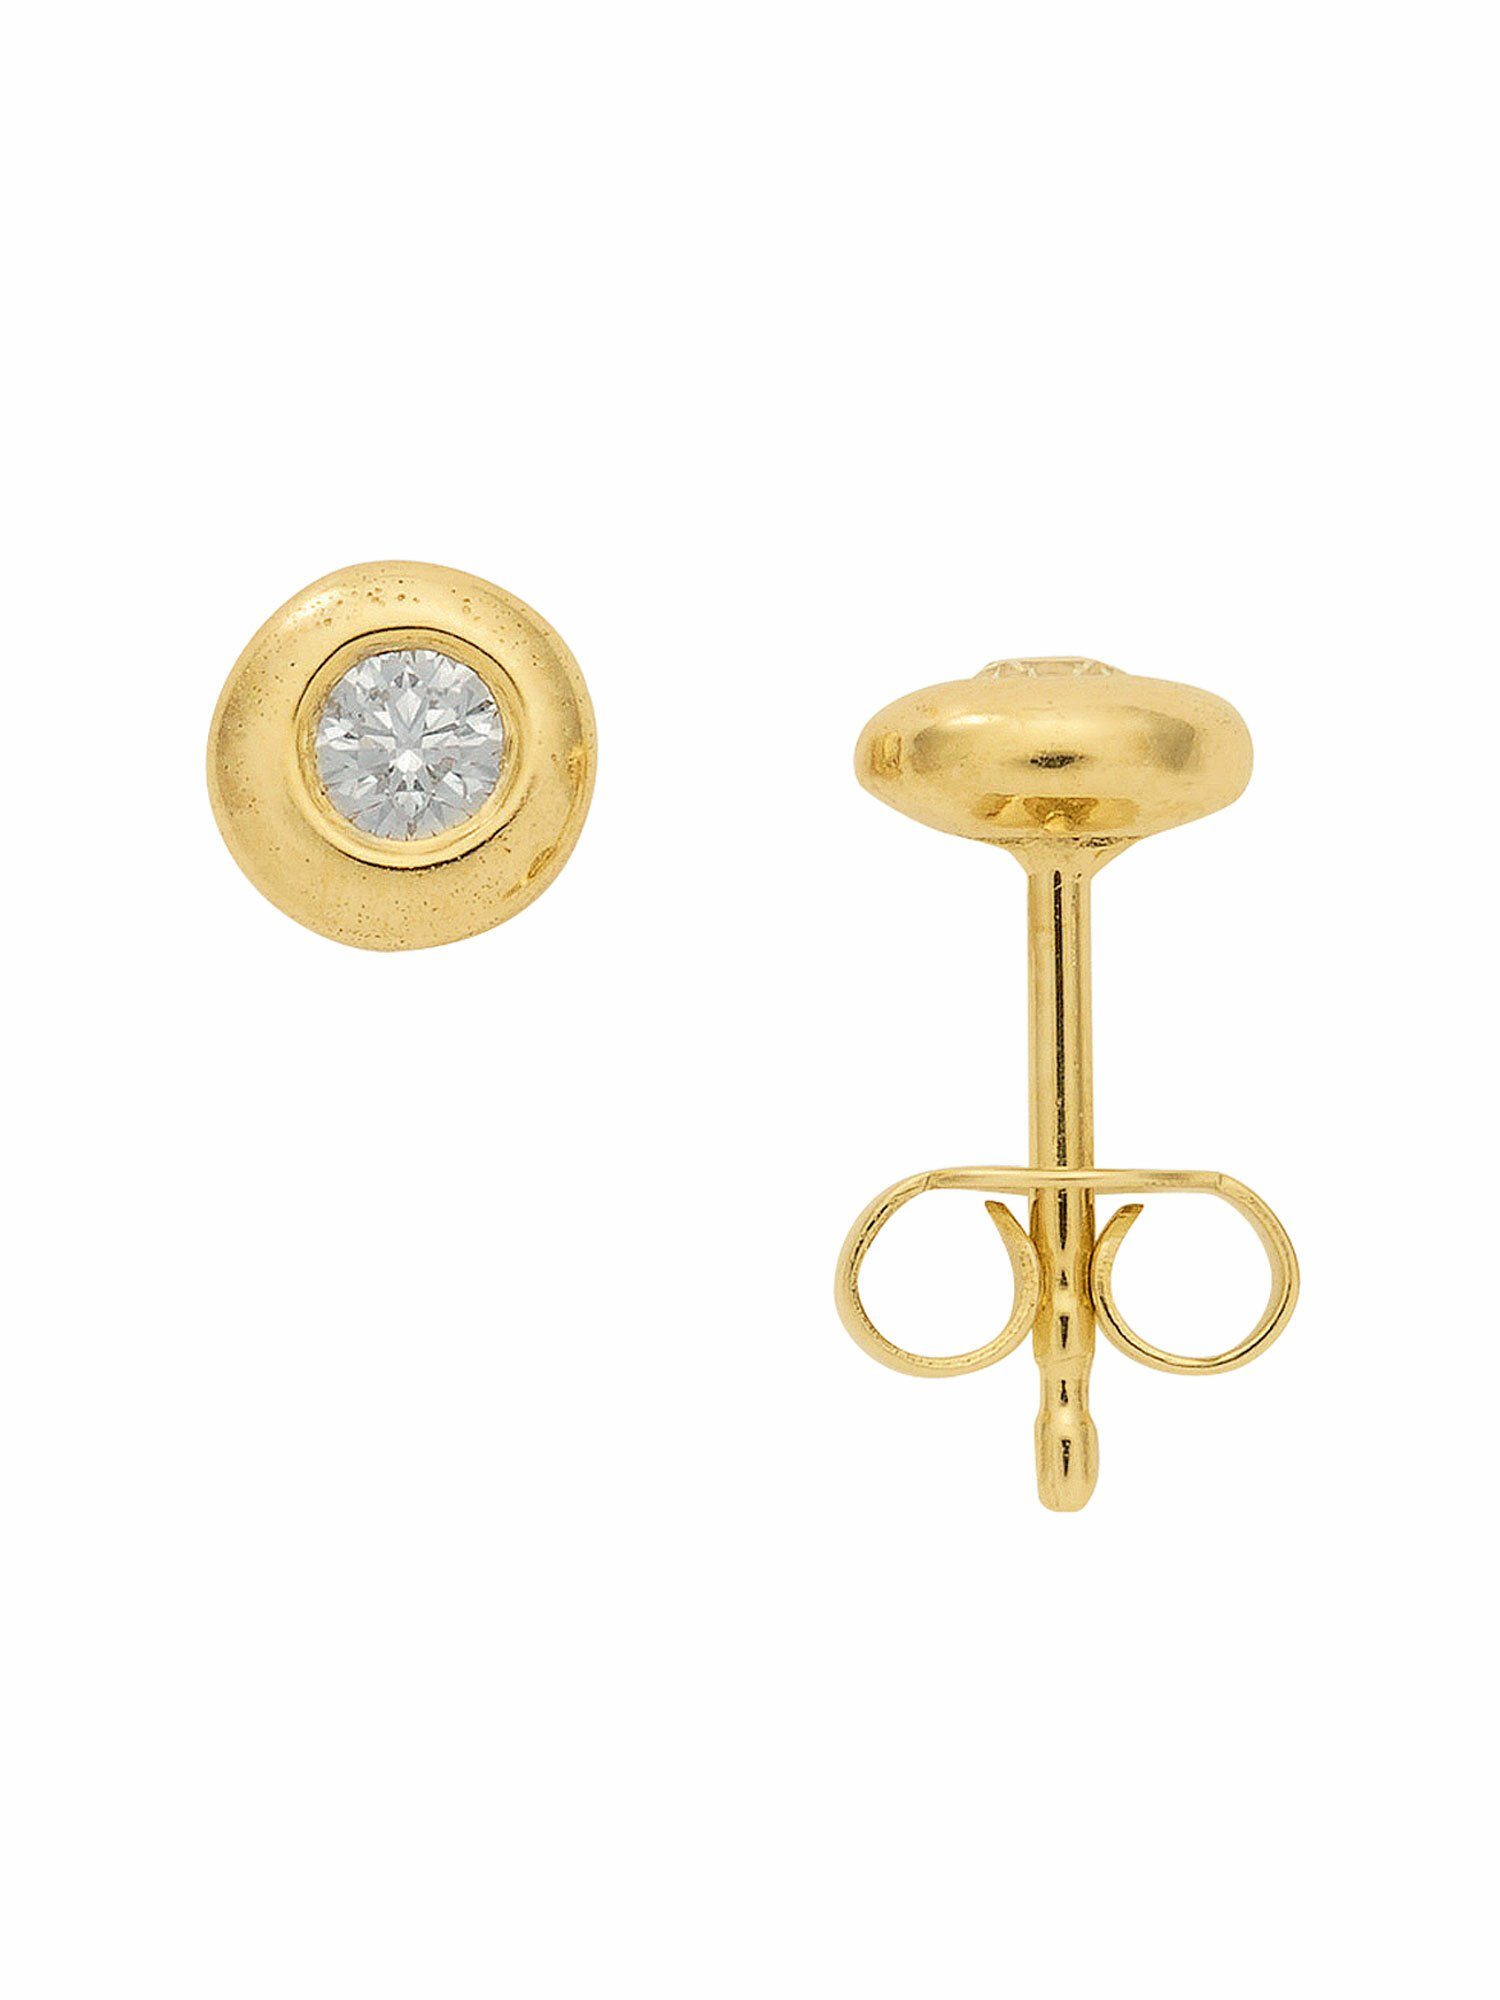 Damen Schmuck Adelia´s Paar Ohrhänger 1 Paar 585 Gold Ohrringe / Ohrstecker mit Brillant Ø 5,9 mm, 585 Gold Goldschmuck für Dame